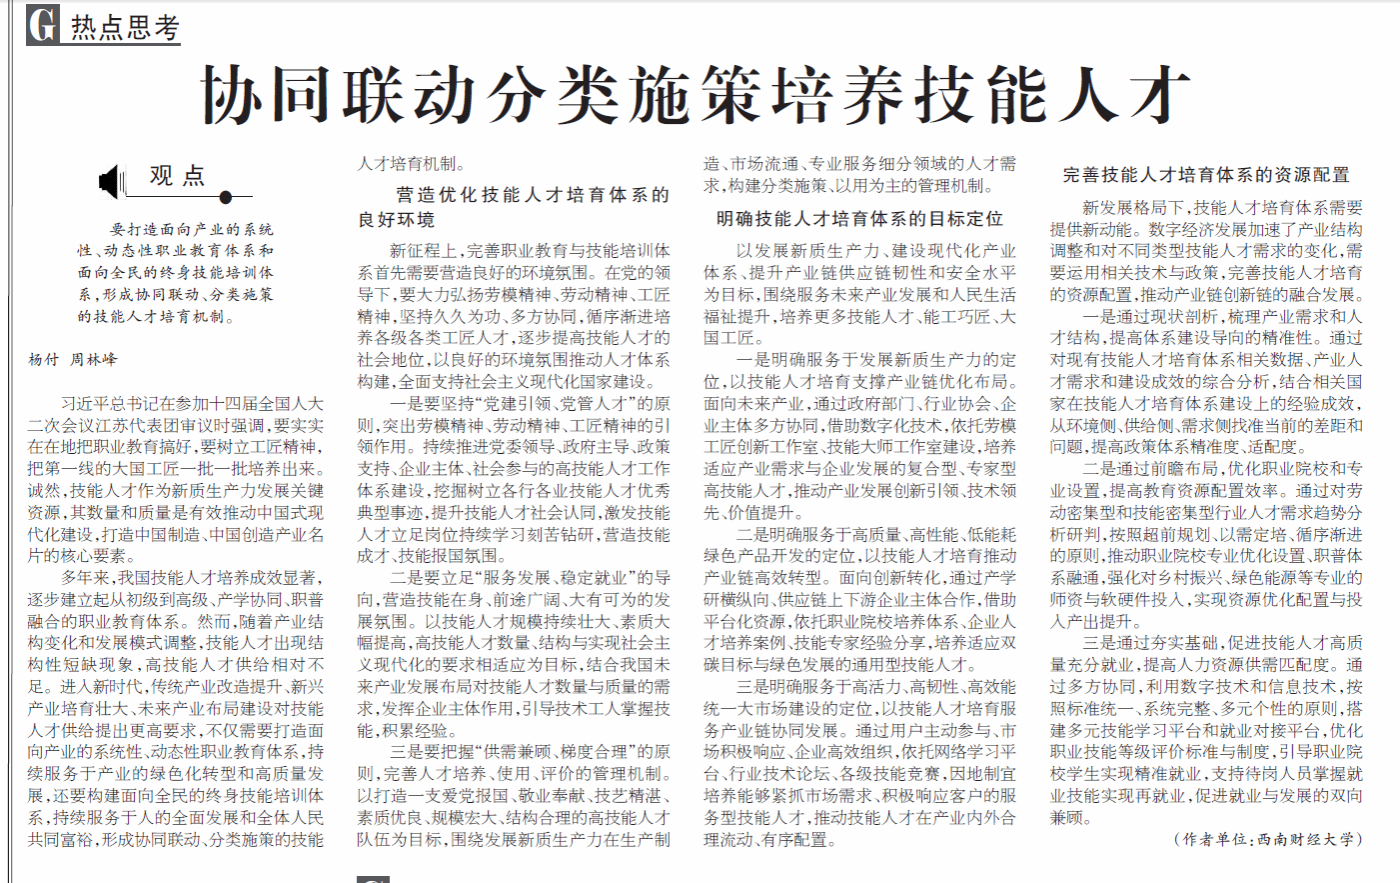 我院教工第二党支部杨付教授在《工人日报》发表署名文章